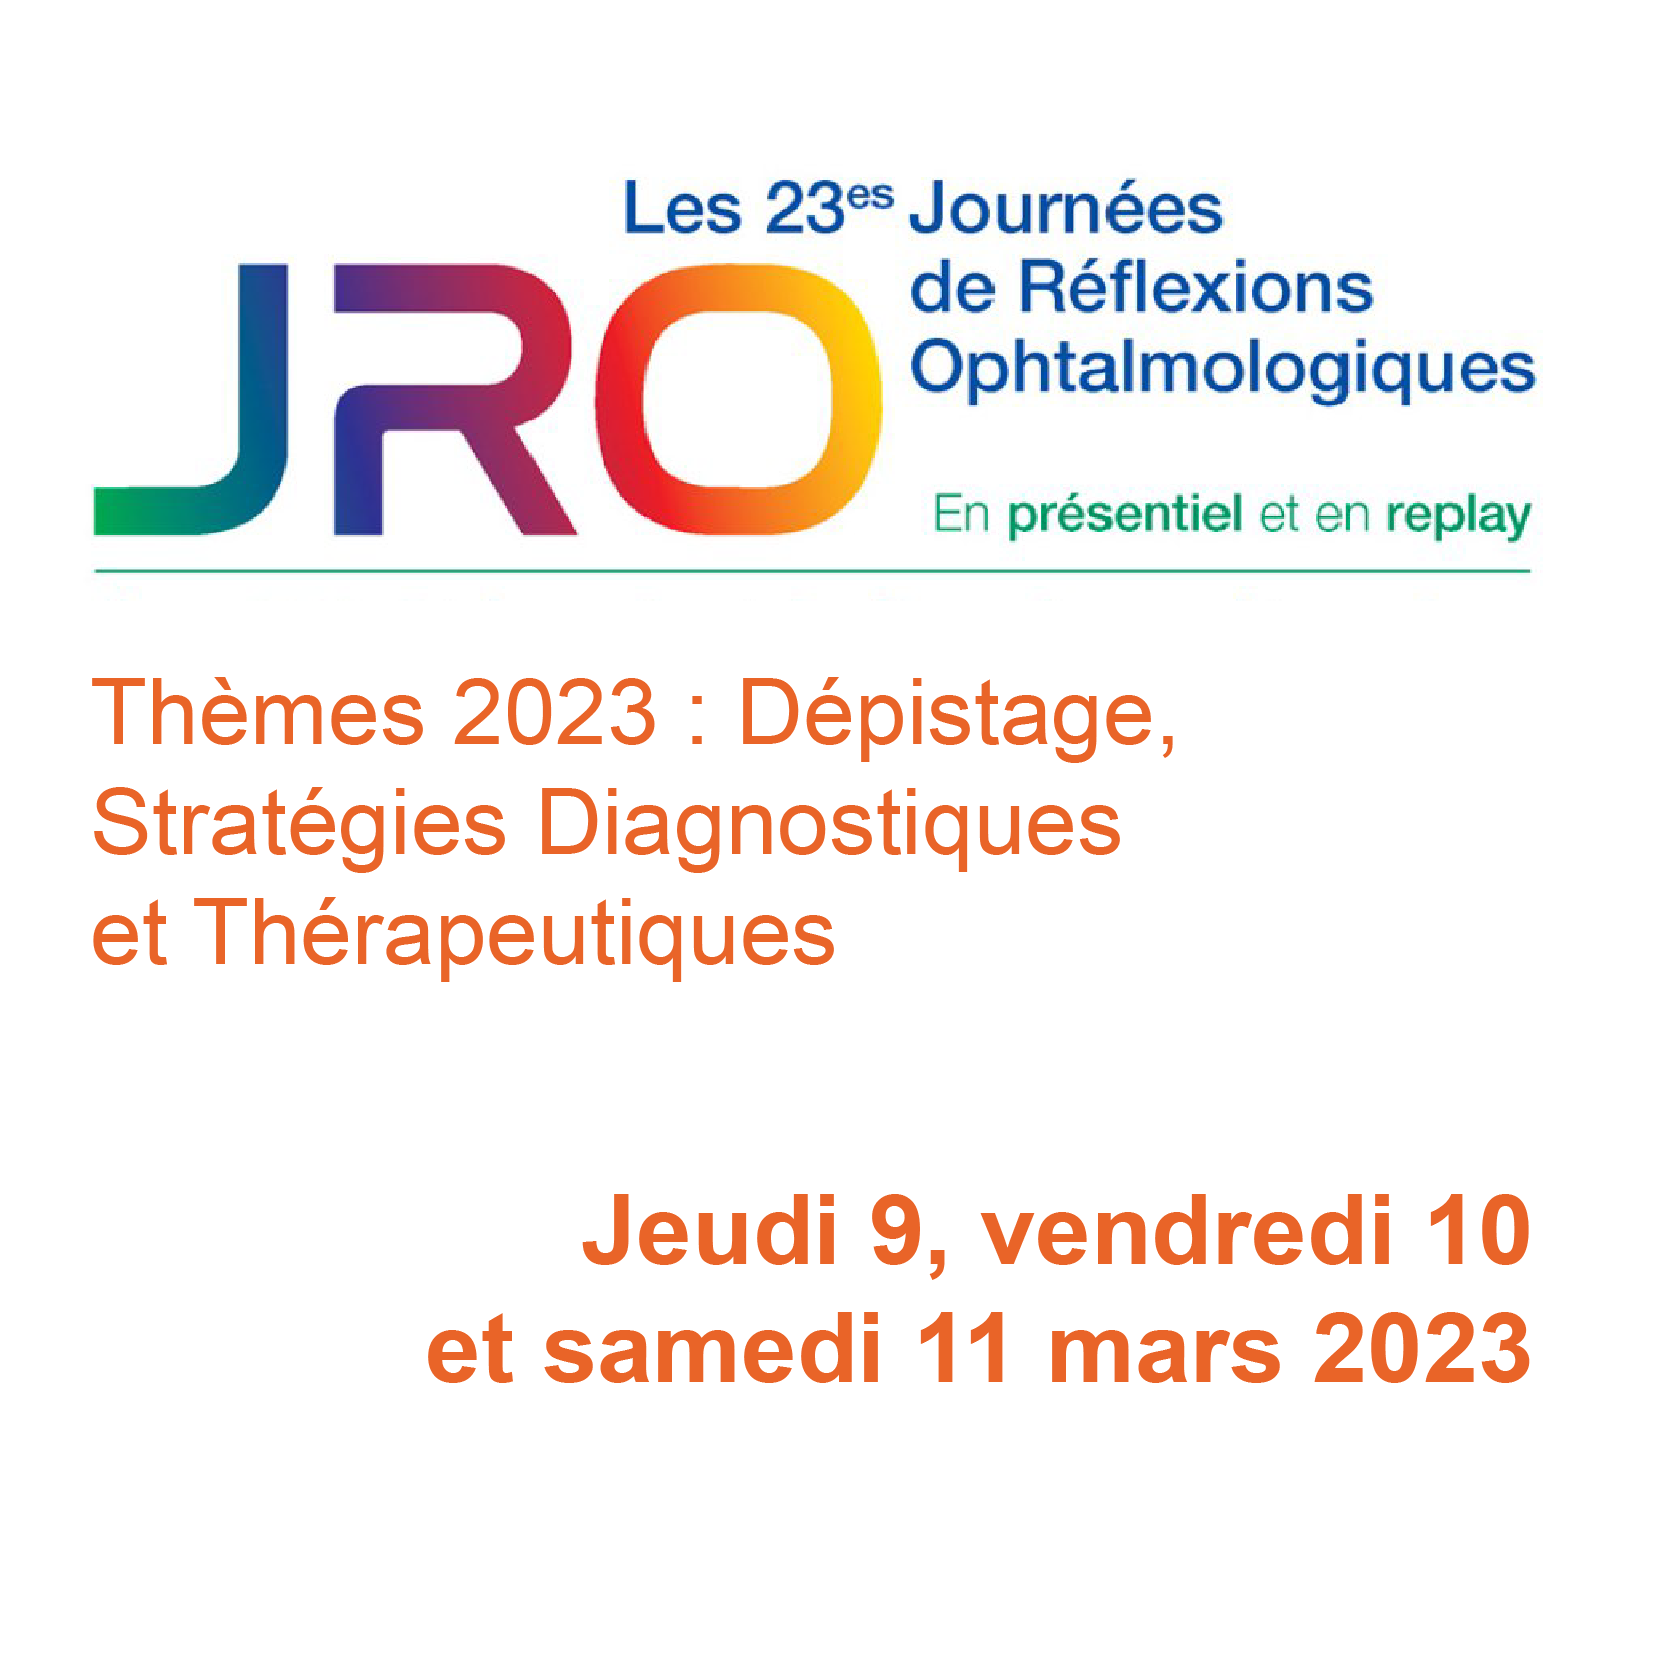 23es Journées de Réflexions Ophtalmologiques - JRO 2023